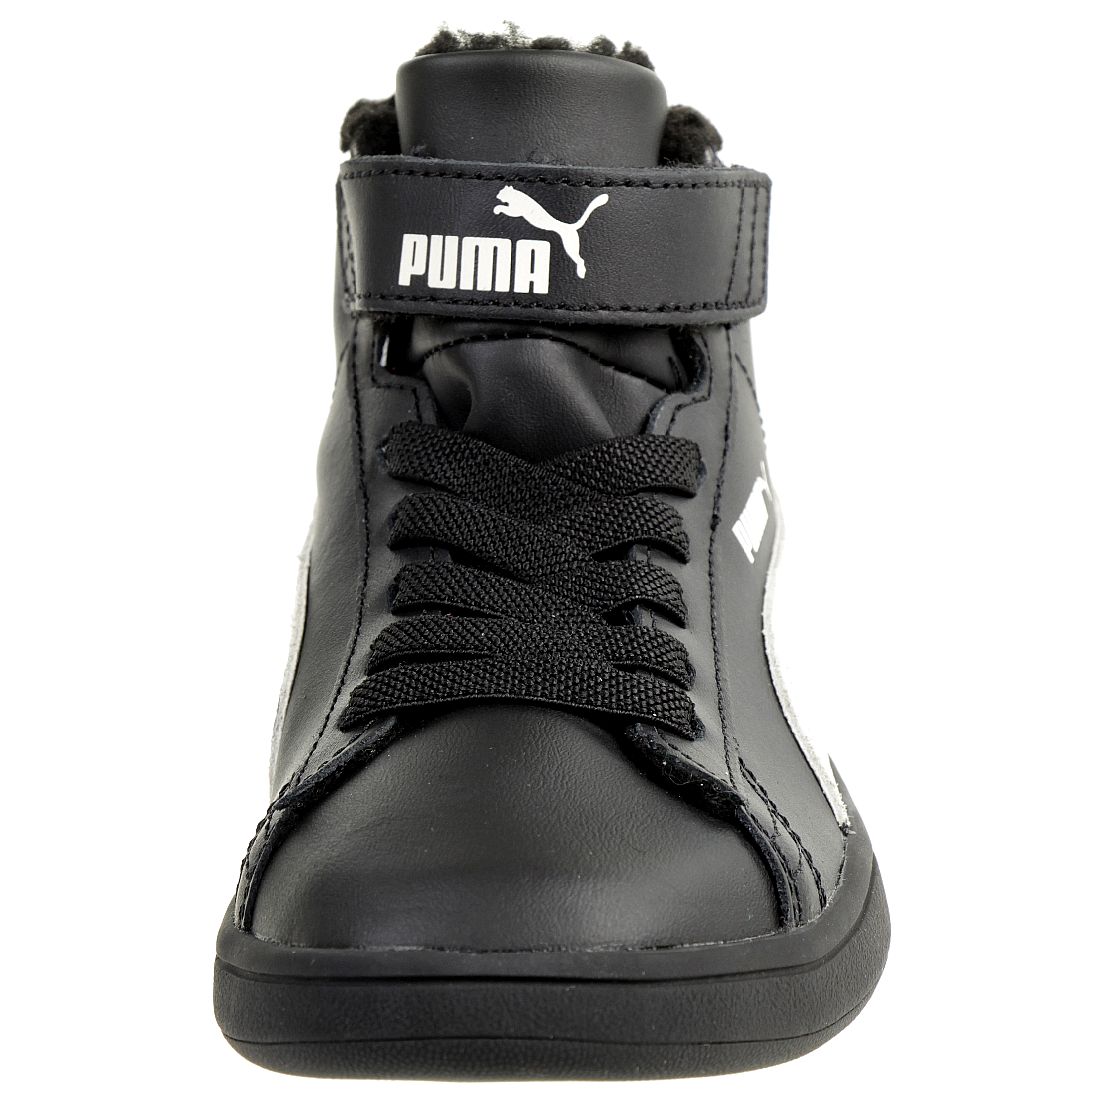 Puma Smash v2 Mid L Fur V PS Winterstiefel Boots Kinder Sneaker warm gefüttert Schwarz